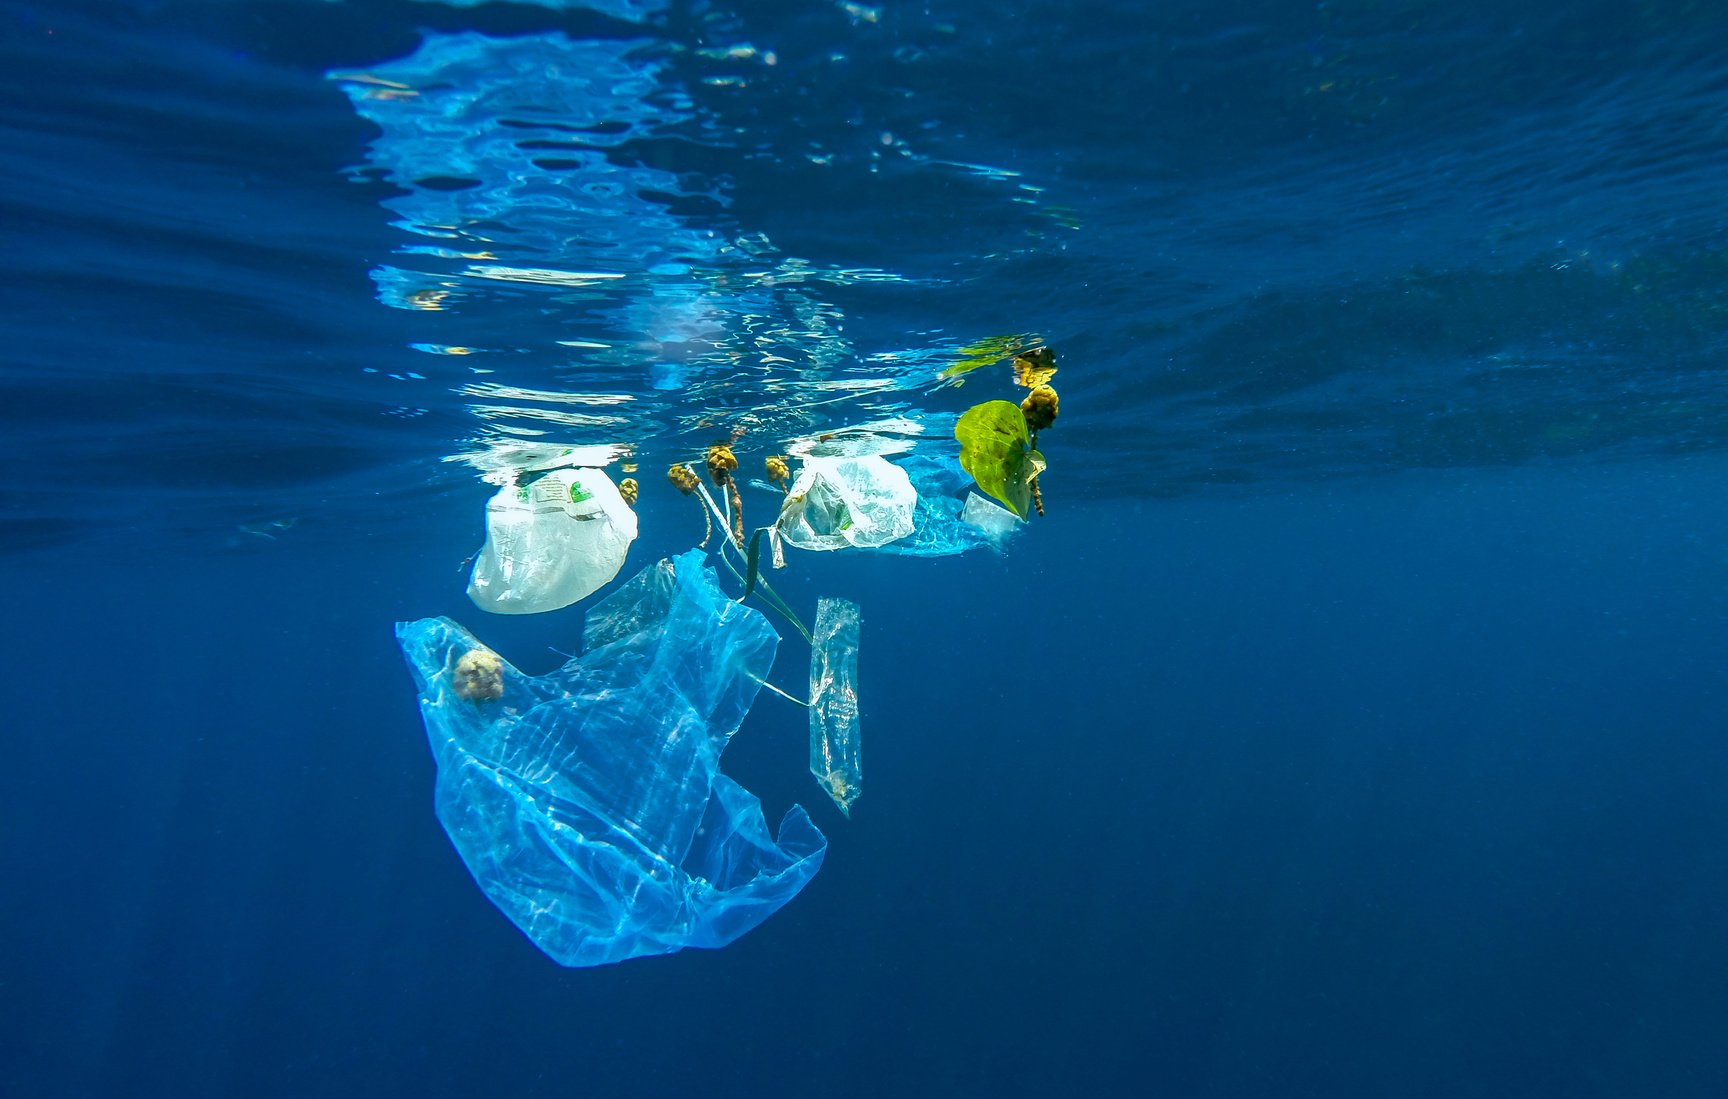 Μειώθηκε σημαντικά η κατανάλωση της λεπτής πλαστικής σακούλας το α’ τρίμηνο του 2018